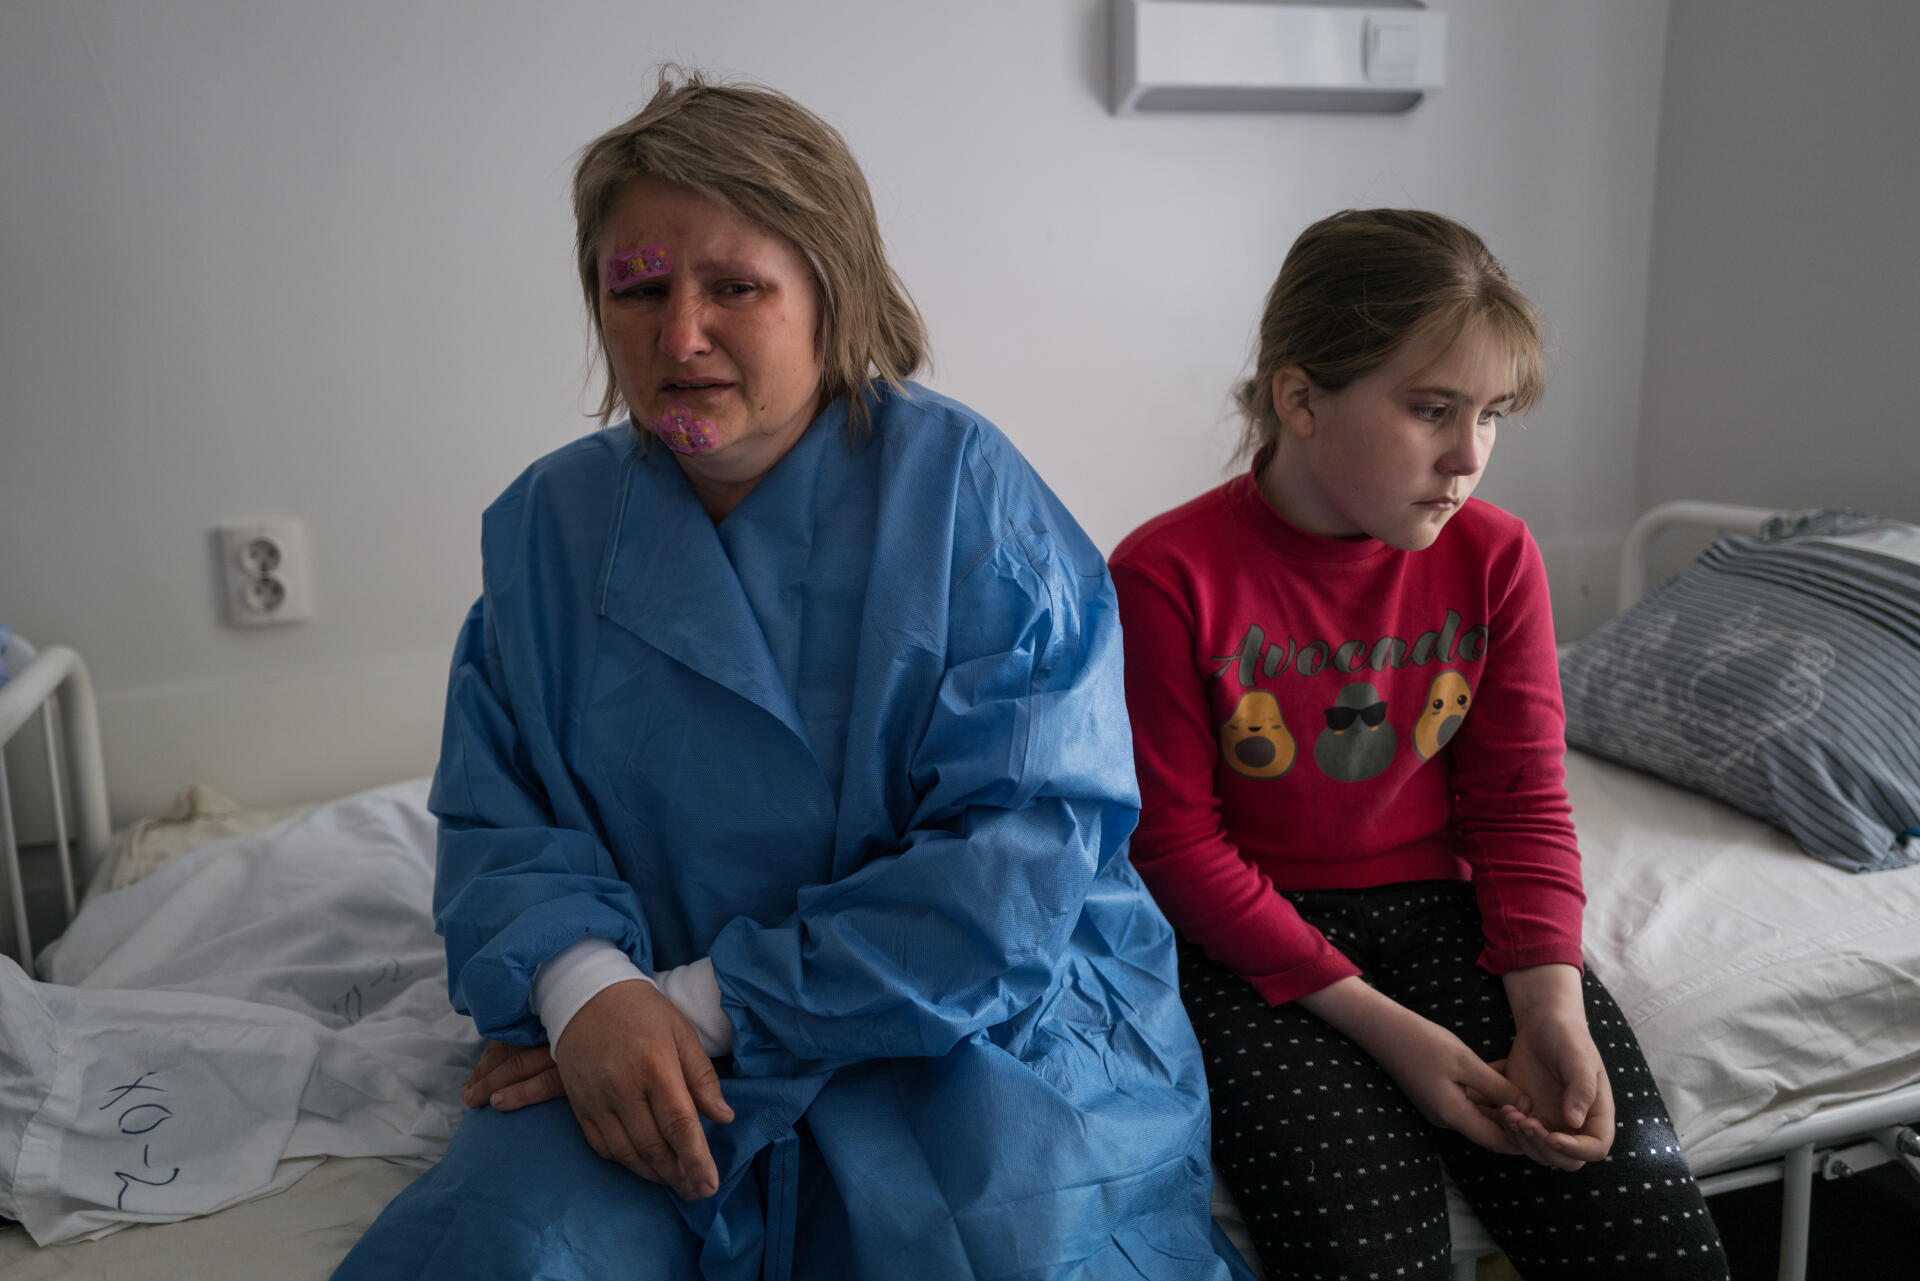 Tatiana,  44 ans, et sa fille, Dasha, 10 ans, sont à l’hôpital de Sloviansk, dans le nord de la région de Donetsk (Ukraine). La mère a été blessée lors d’un bombardement à Lyman, une ville voisine, le 24 avril 2022.